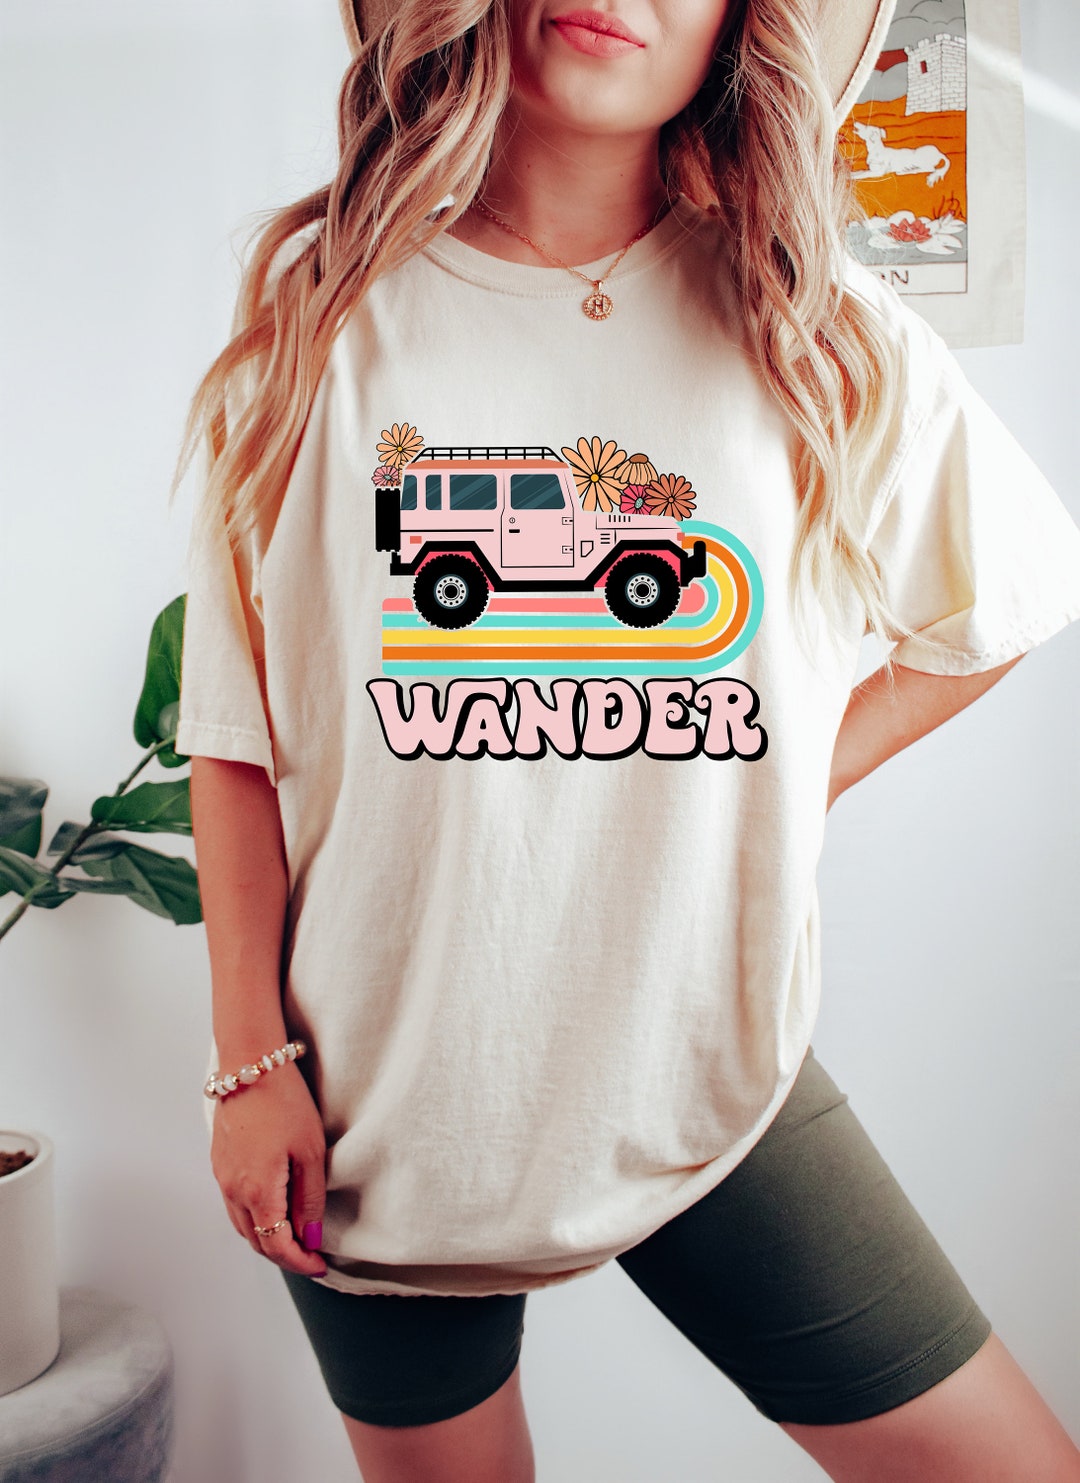 Wander Woman Tee Wander More Shirt Camping Shirts - Etsy